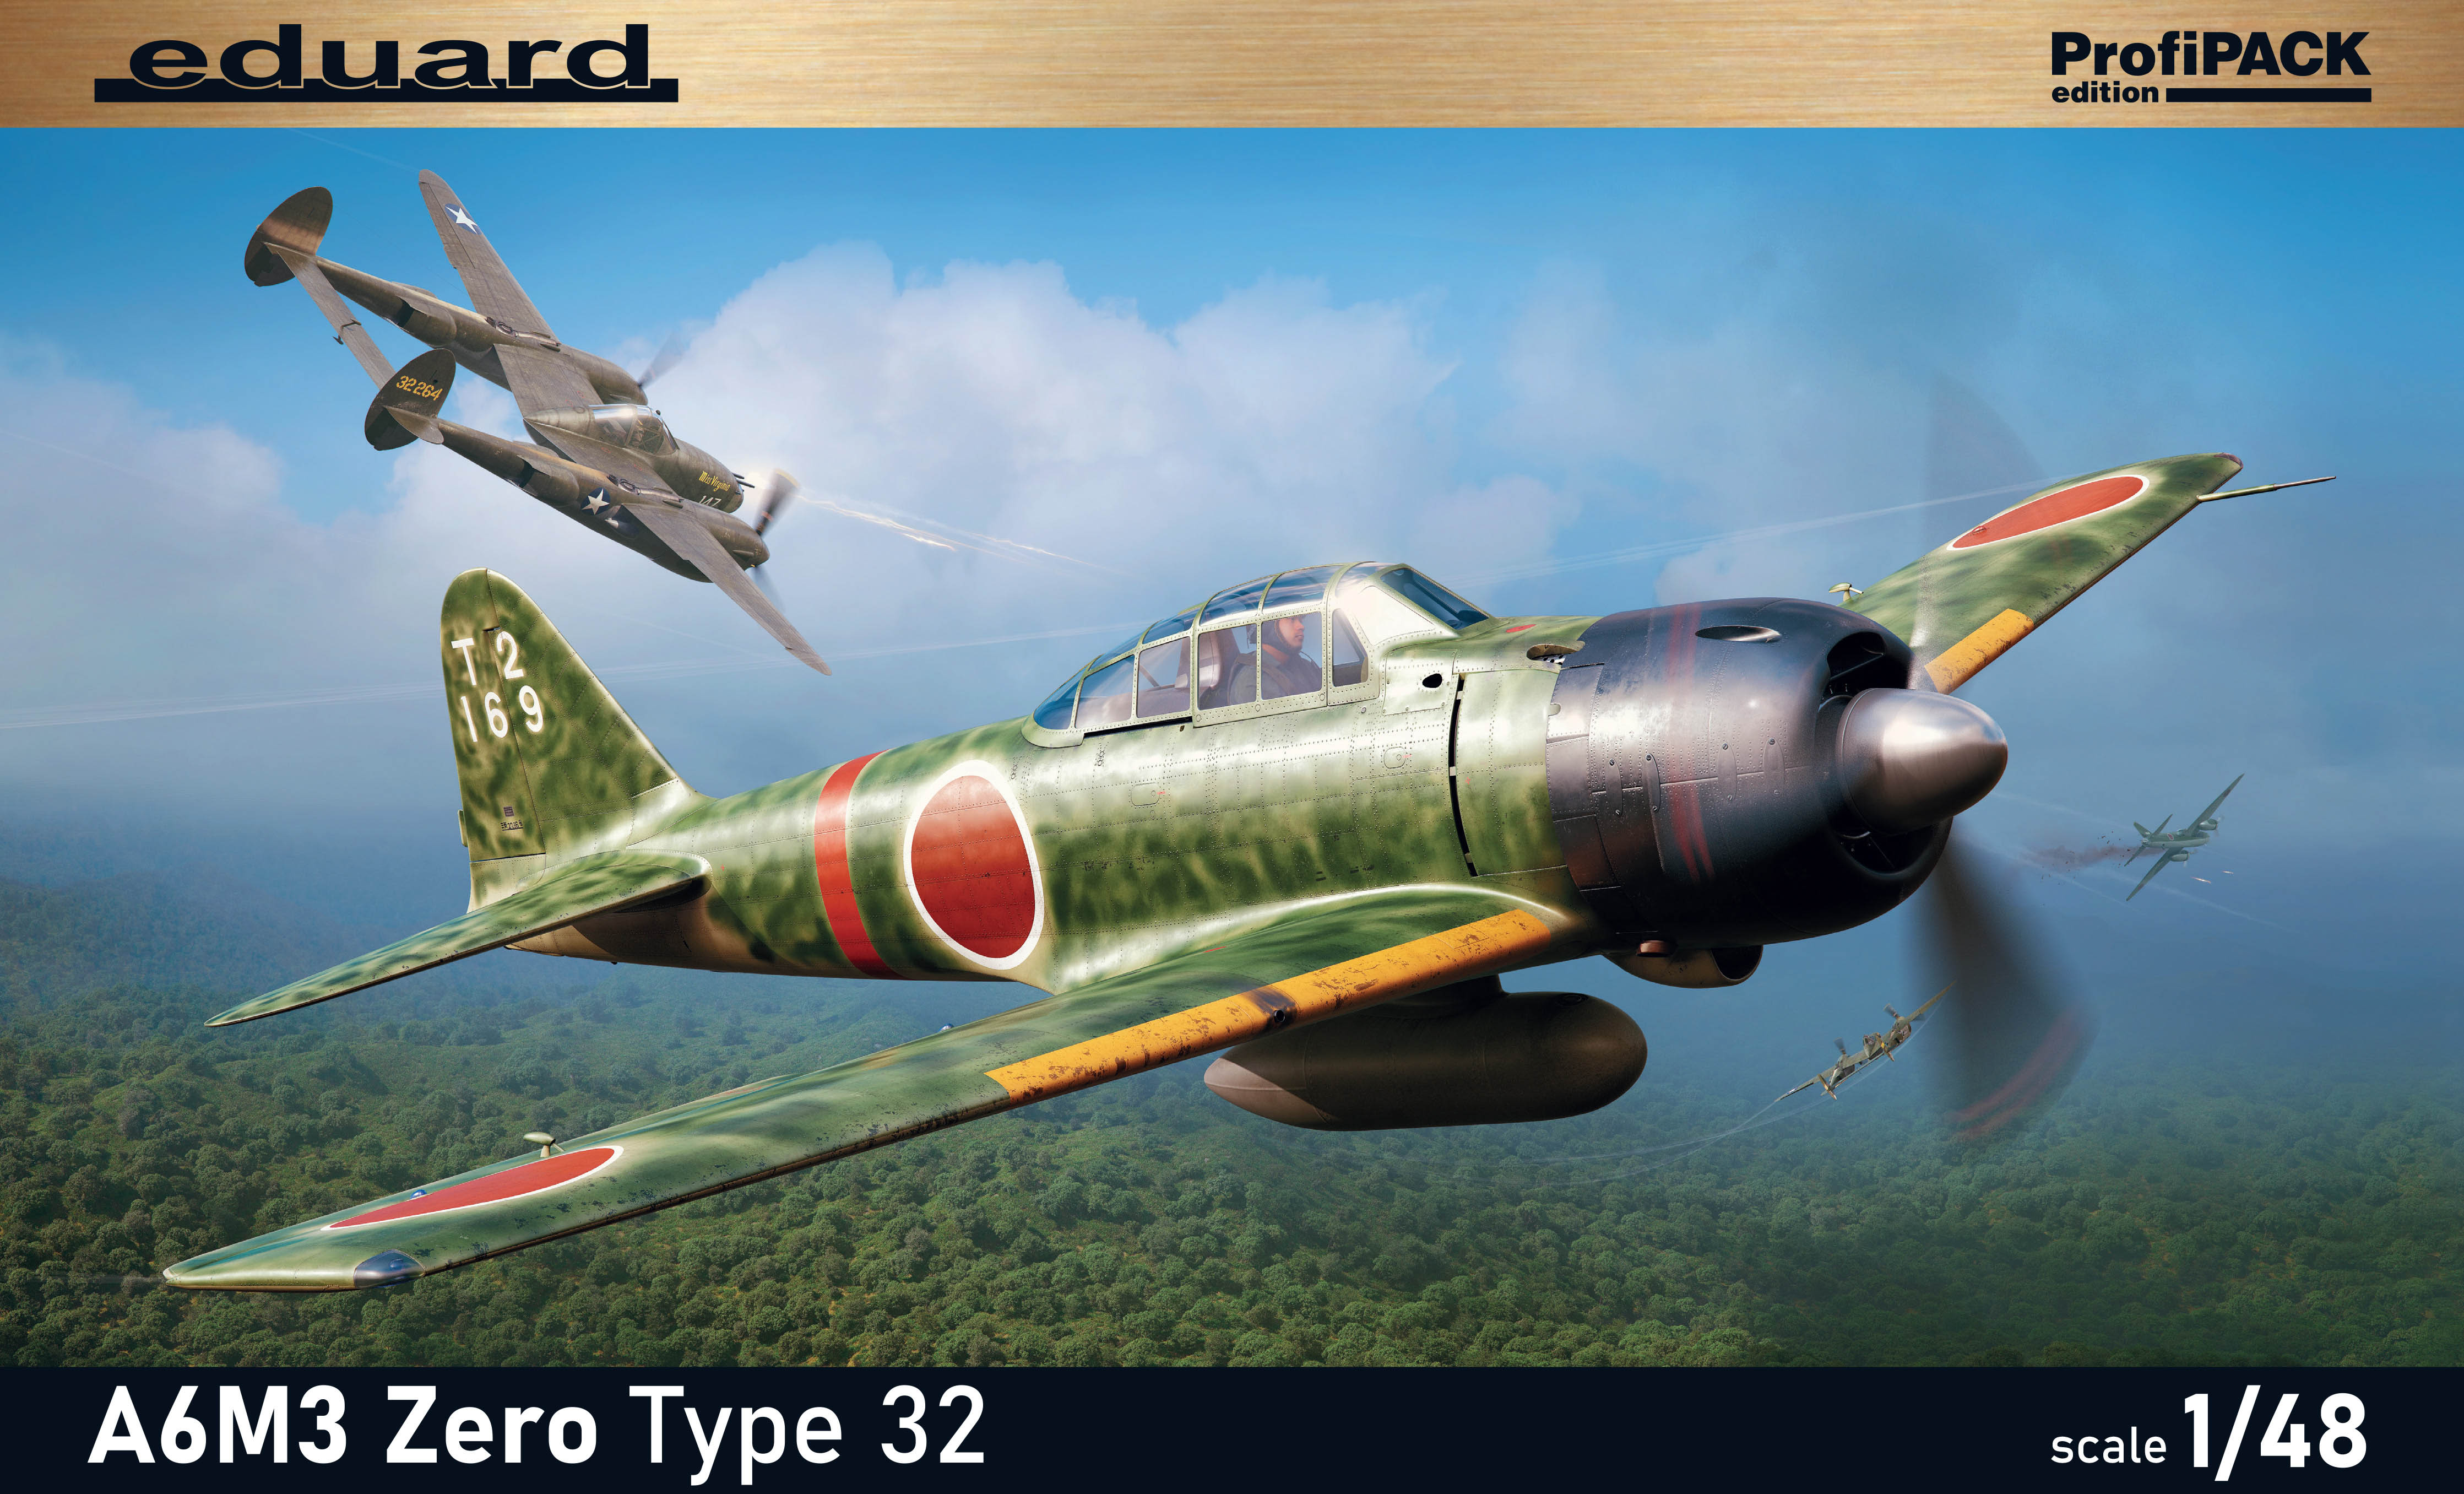 Model kit 1/48Mitsubishi A6M3 Zero Type 32 ProfiPACK edition (Eduard kits)